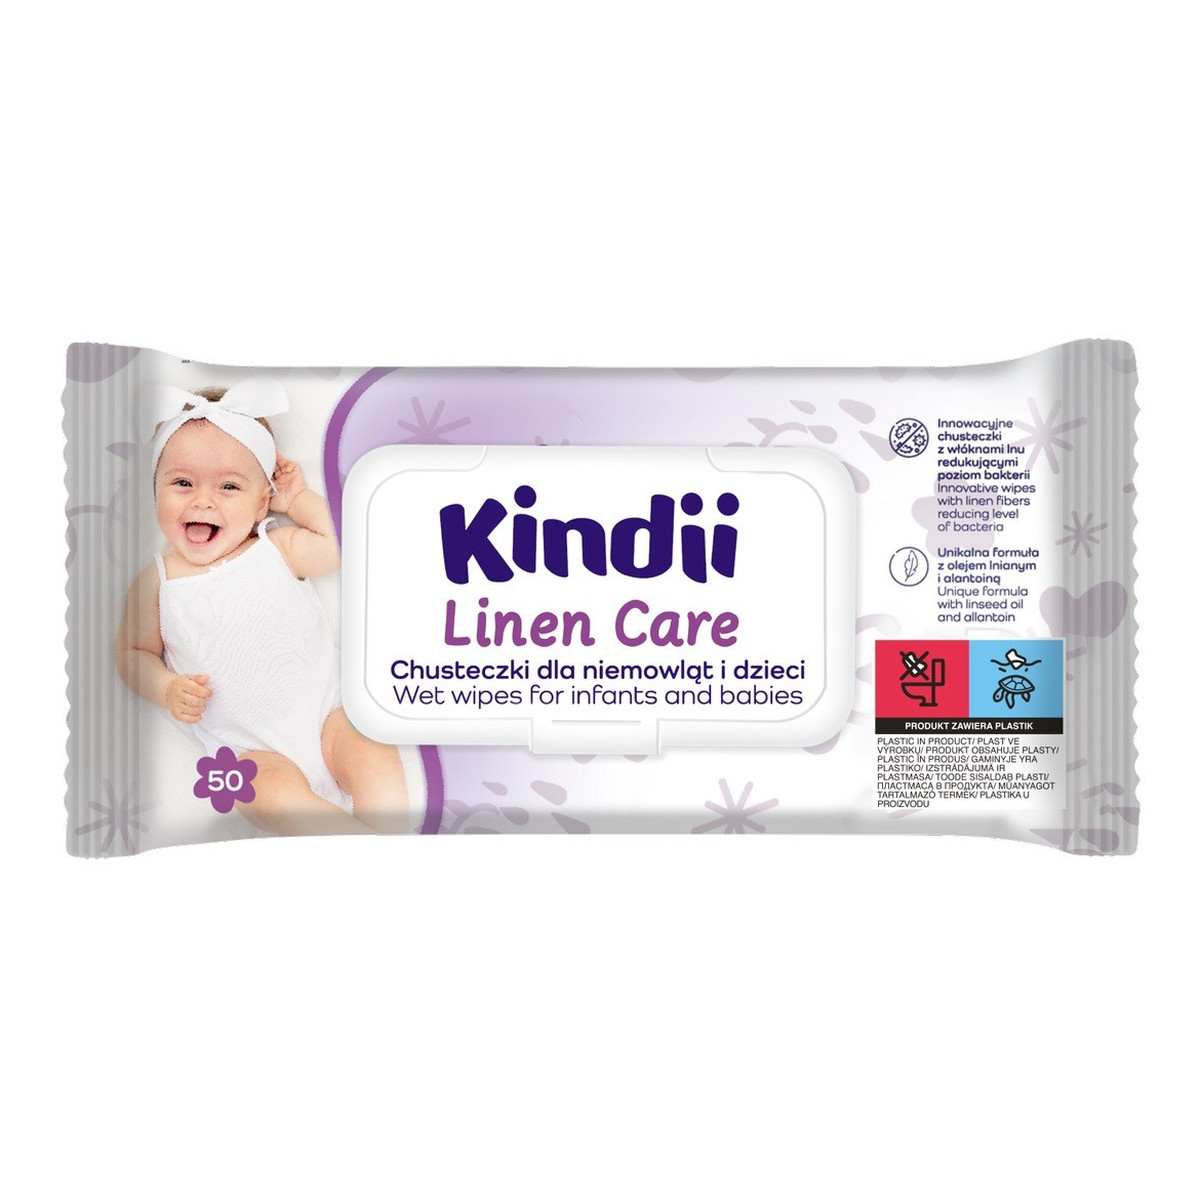 Kindii Linen Care chusteczki dla niemowląt i dzieci 1op.-50szt